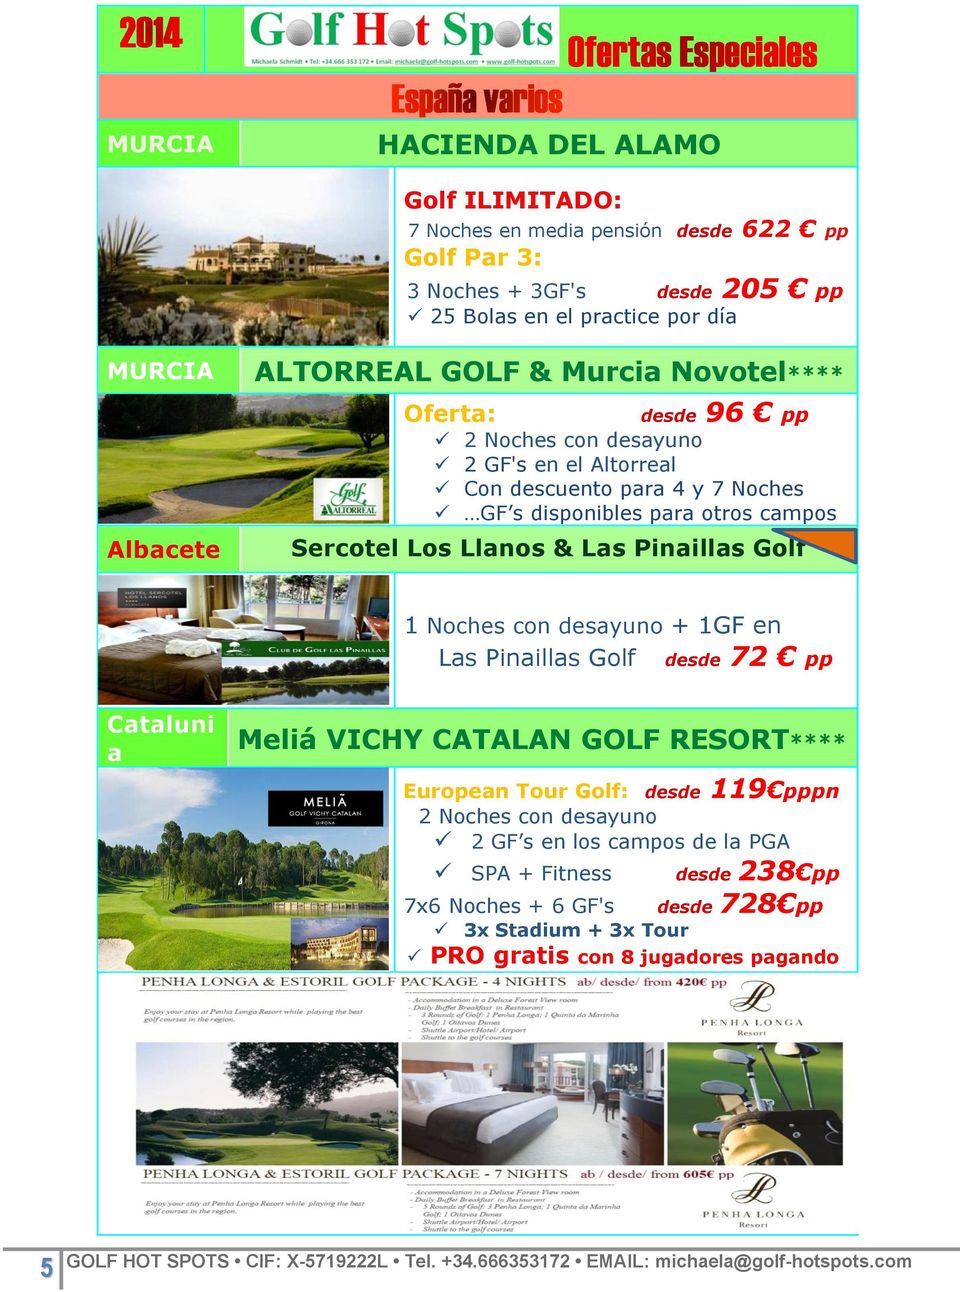 Sercotel Los Llanos & Las Pinaillas Golf 1 Noches con desayuno + 1GF en Las Pinaillas Golf desde 72 pp Cataluni a Meliá VICHY CATALAN GOLF RESORT**** European Tour Golf: